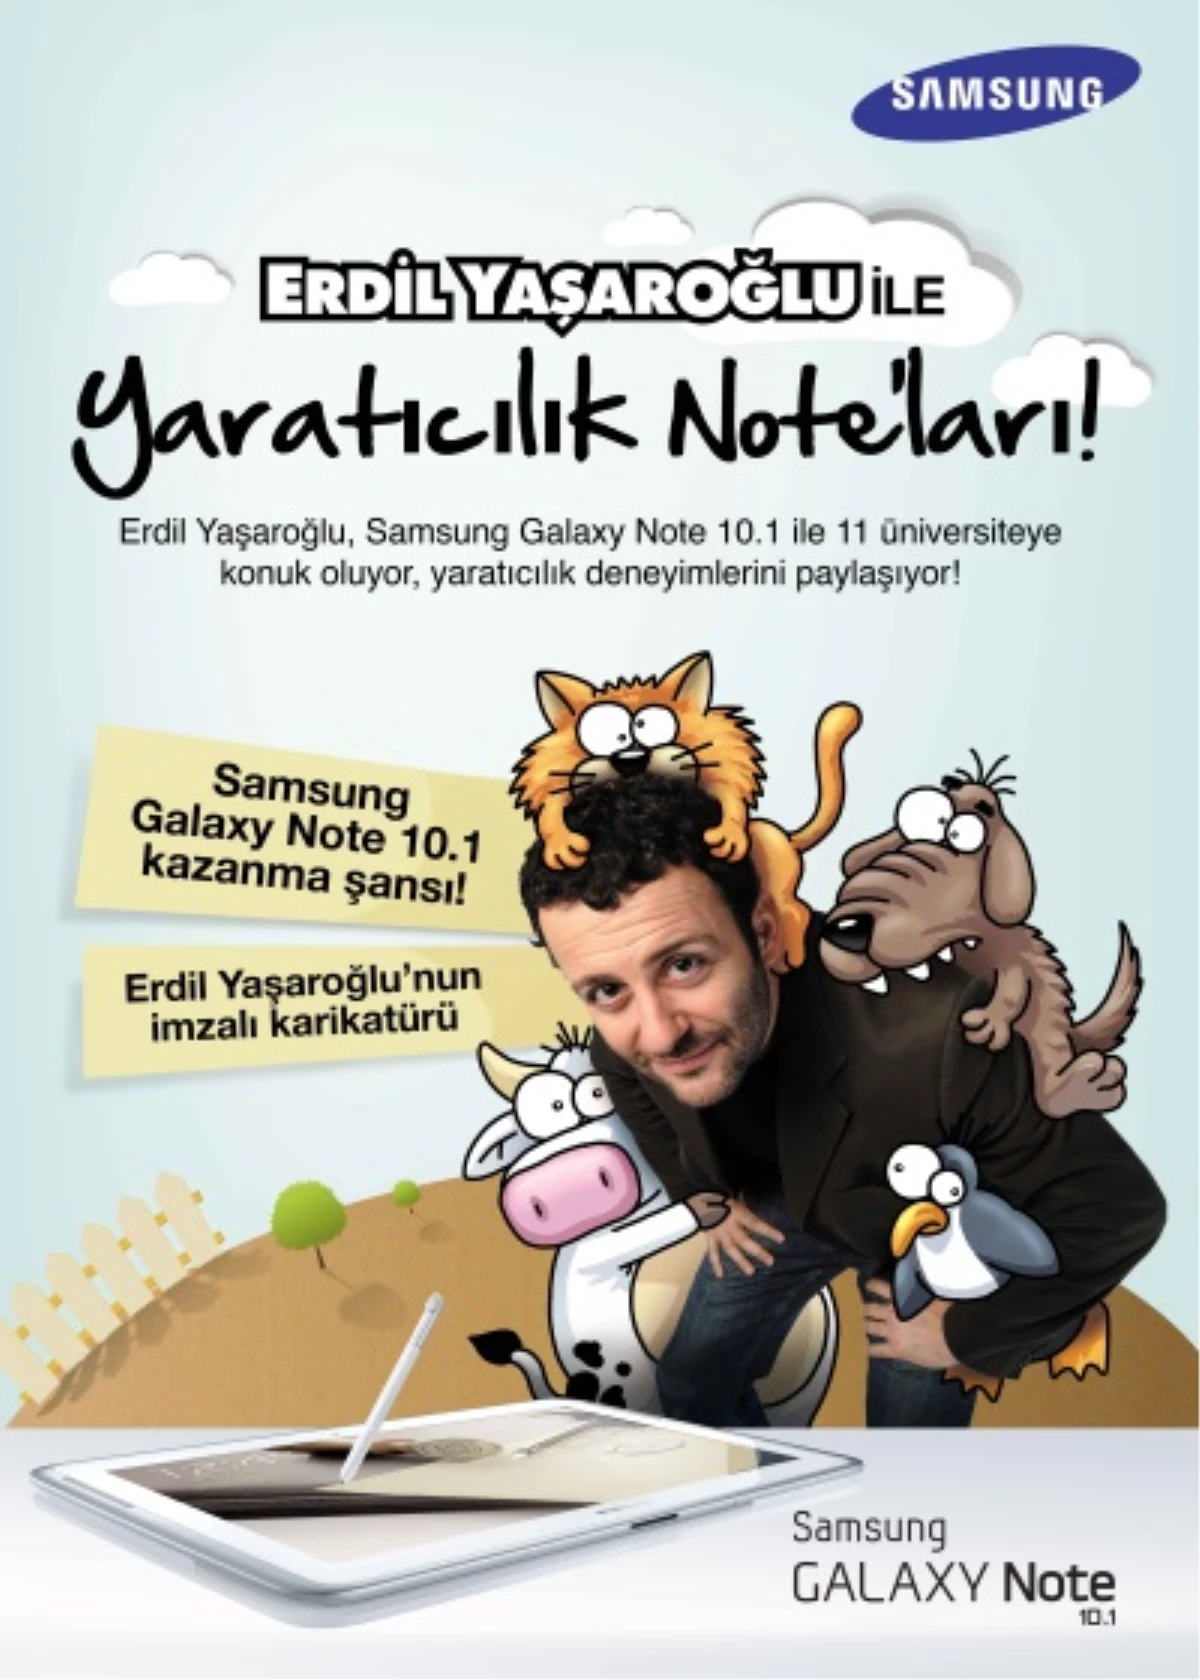 Erdil Yaşaroğlu Yaratıcılık Note´larını Paylaştı